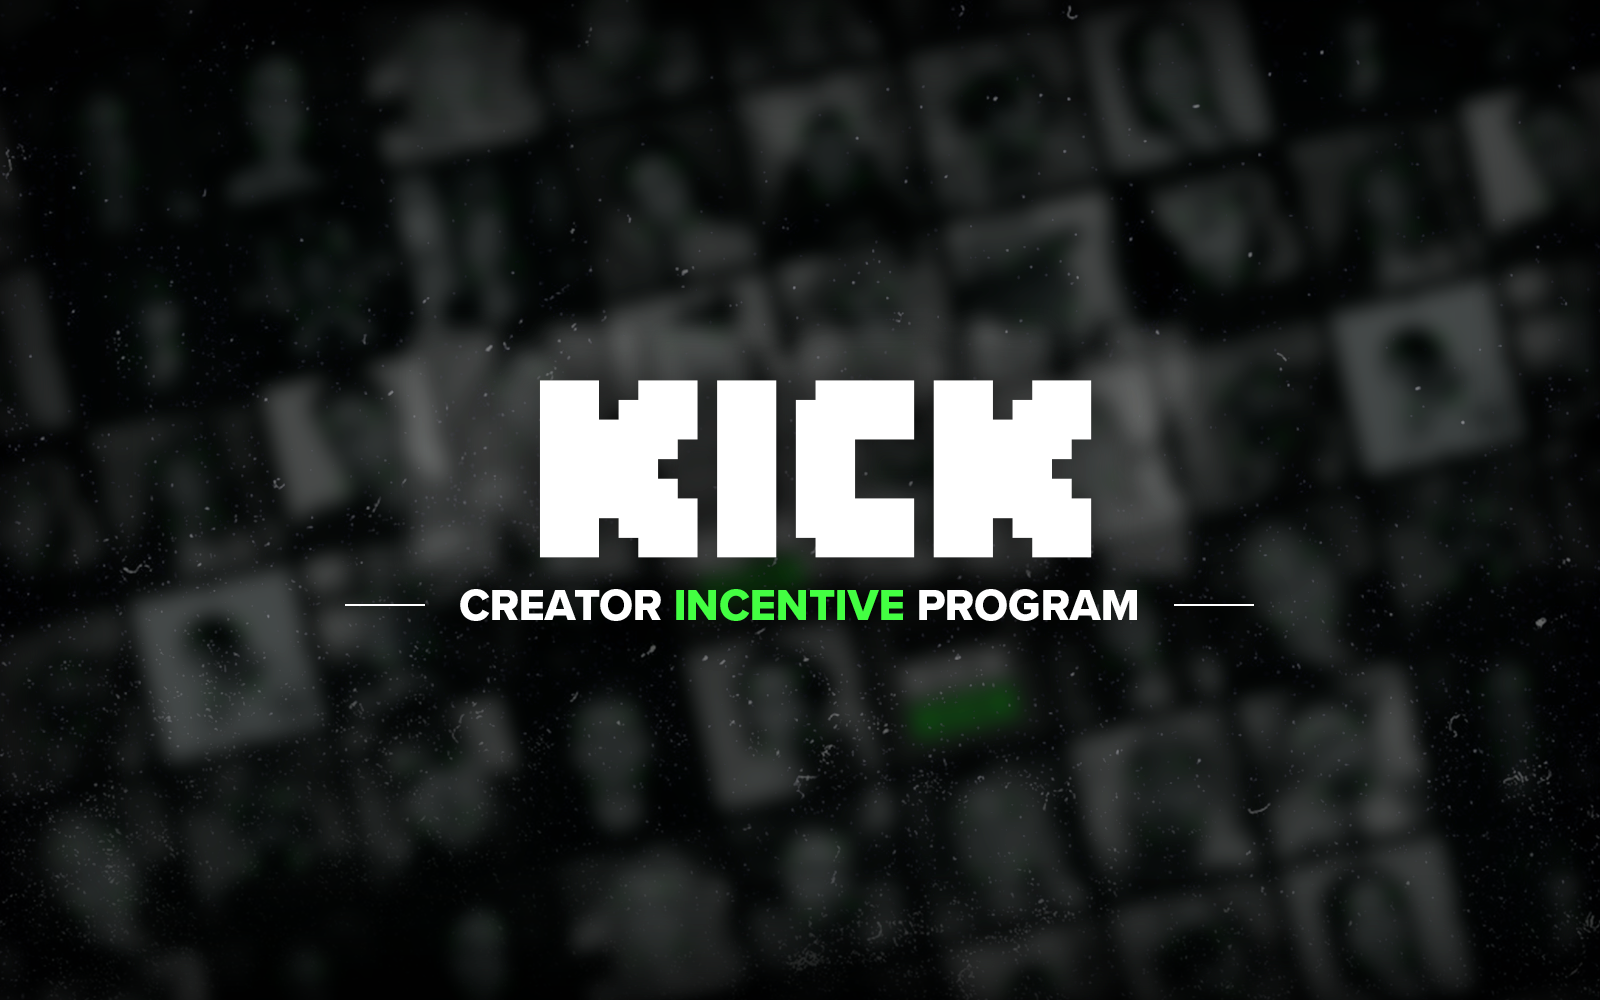 Kick Creator Incentive Program Français